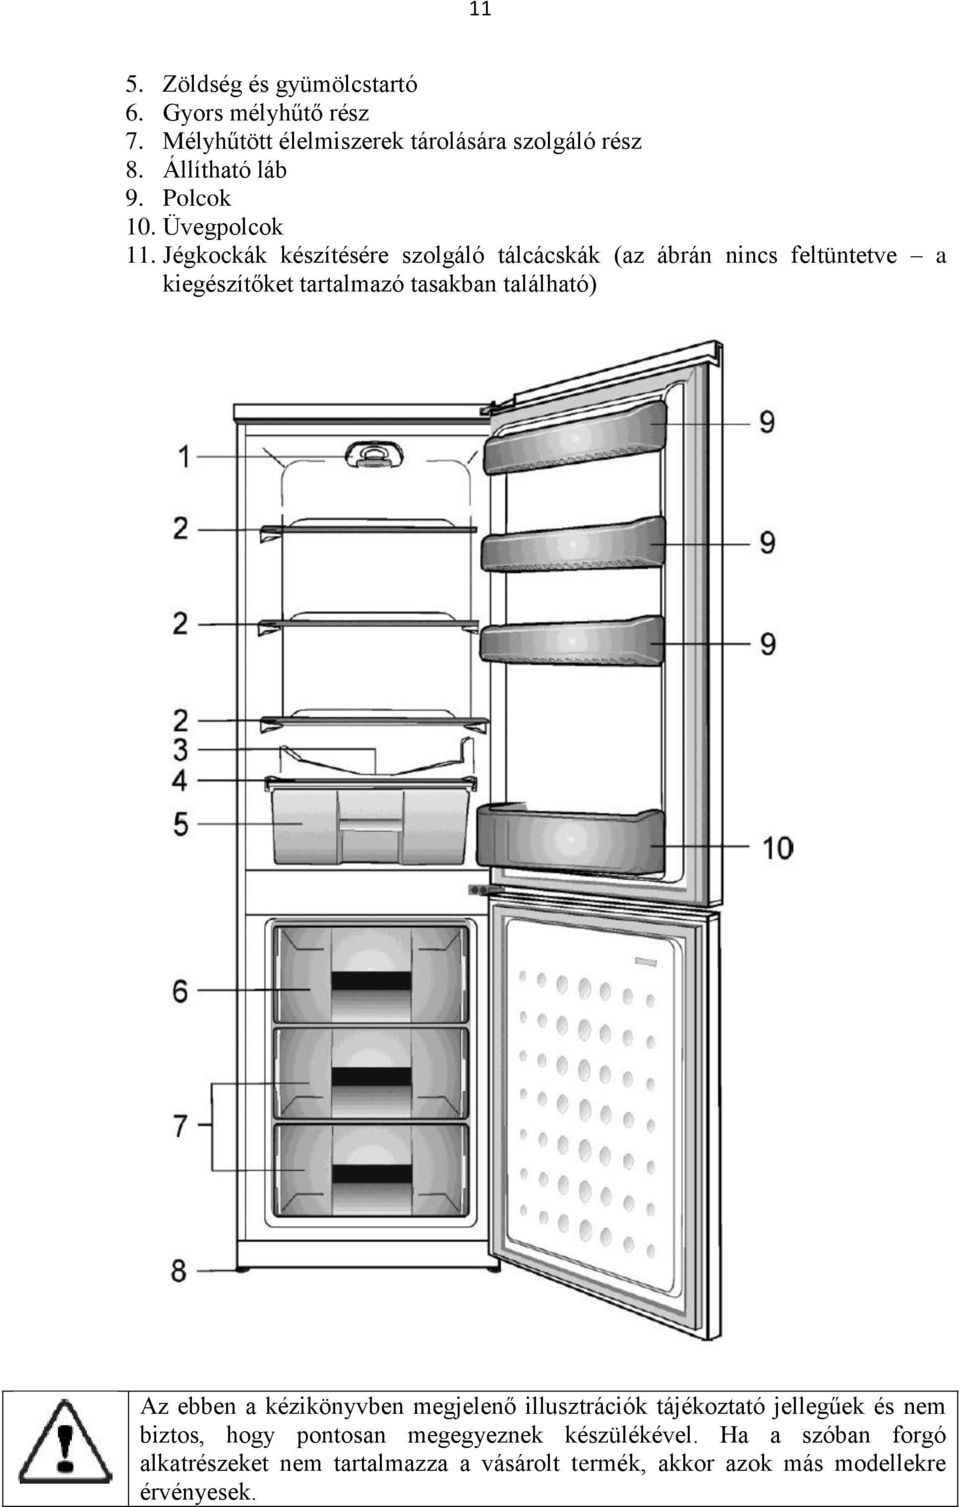 Jégkockák készítésére szolgáló tálcácskák (az ábrán nincs feltüntetve a kiegészítőket tartalmazó tasakban található) Az